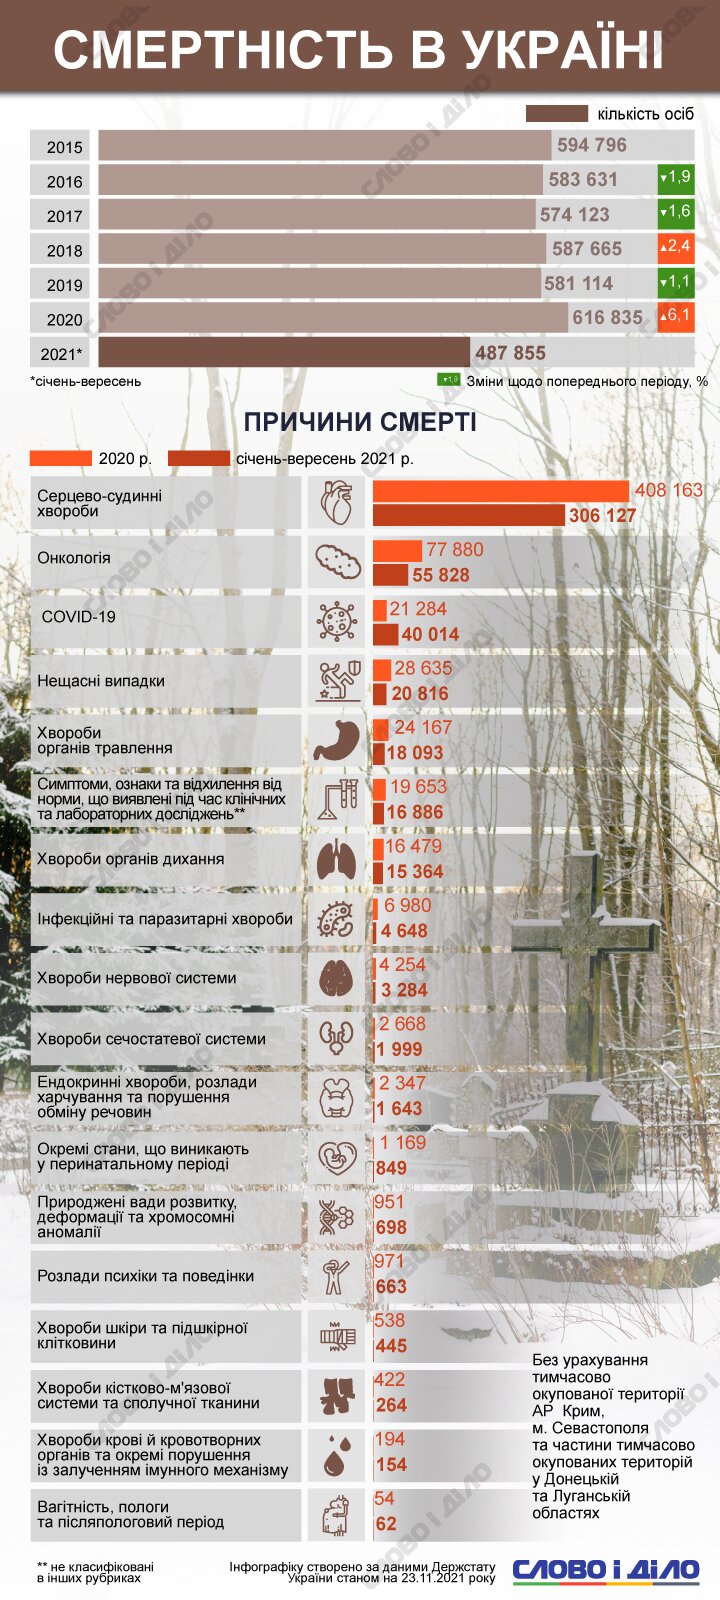 За последние несколько лет украинцы чаще всего умирали от сердечно-сосудистых заболеваний и онкологии.